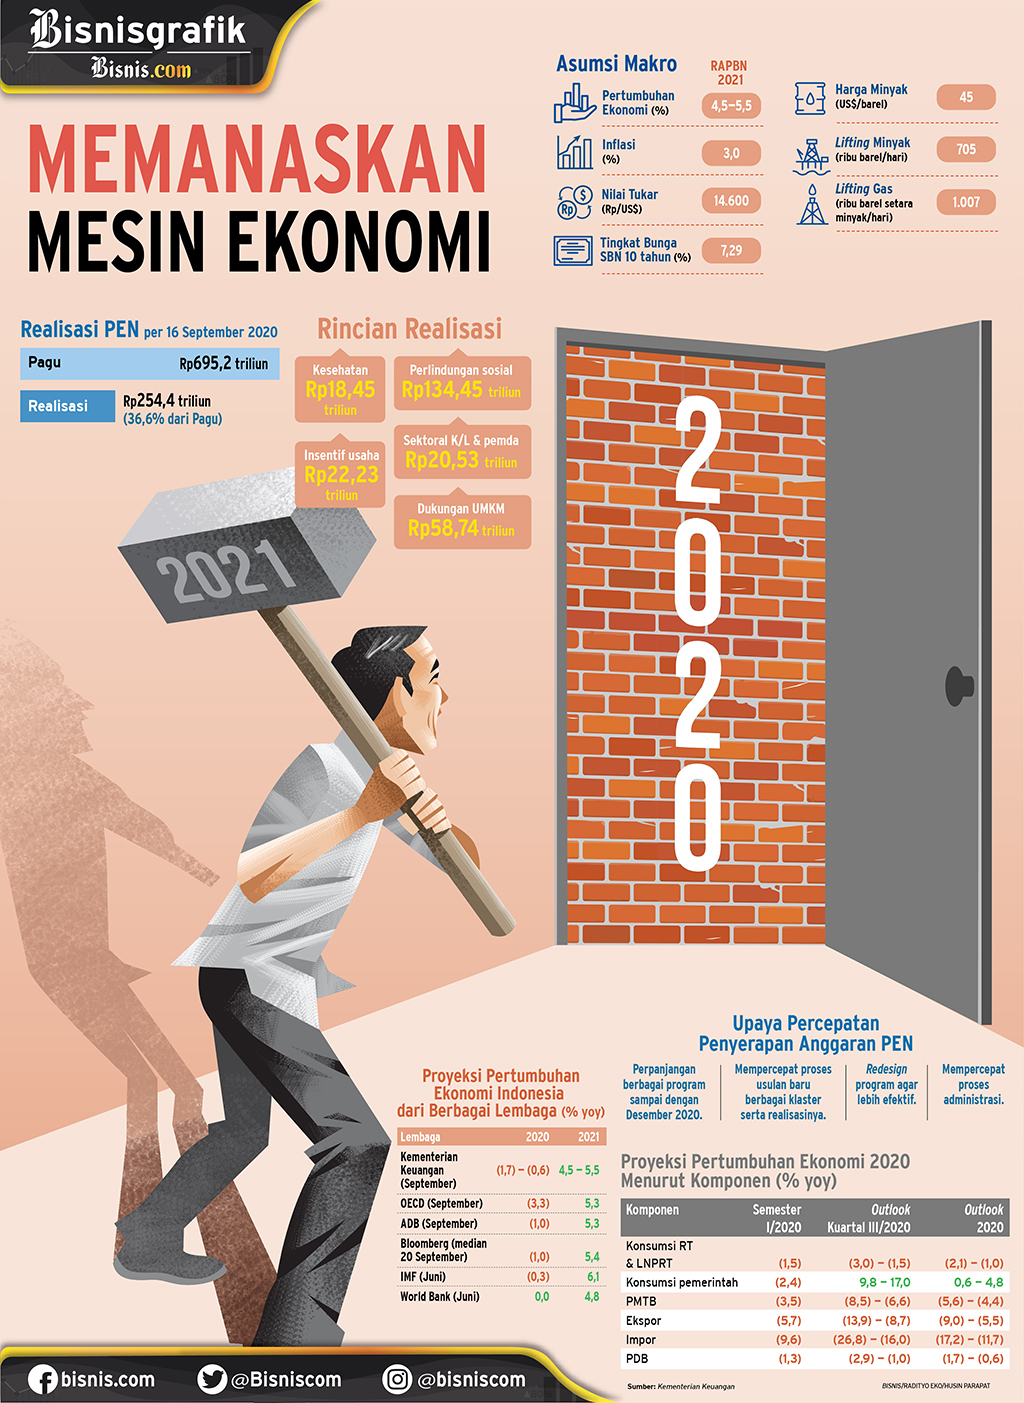 PERTUMBUHAN PDB 2021 : Memanaskan Mesin Ekonomi